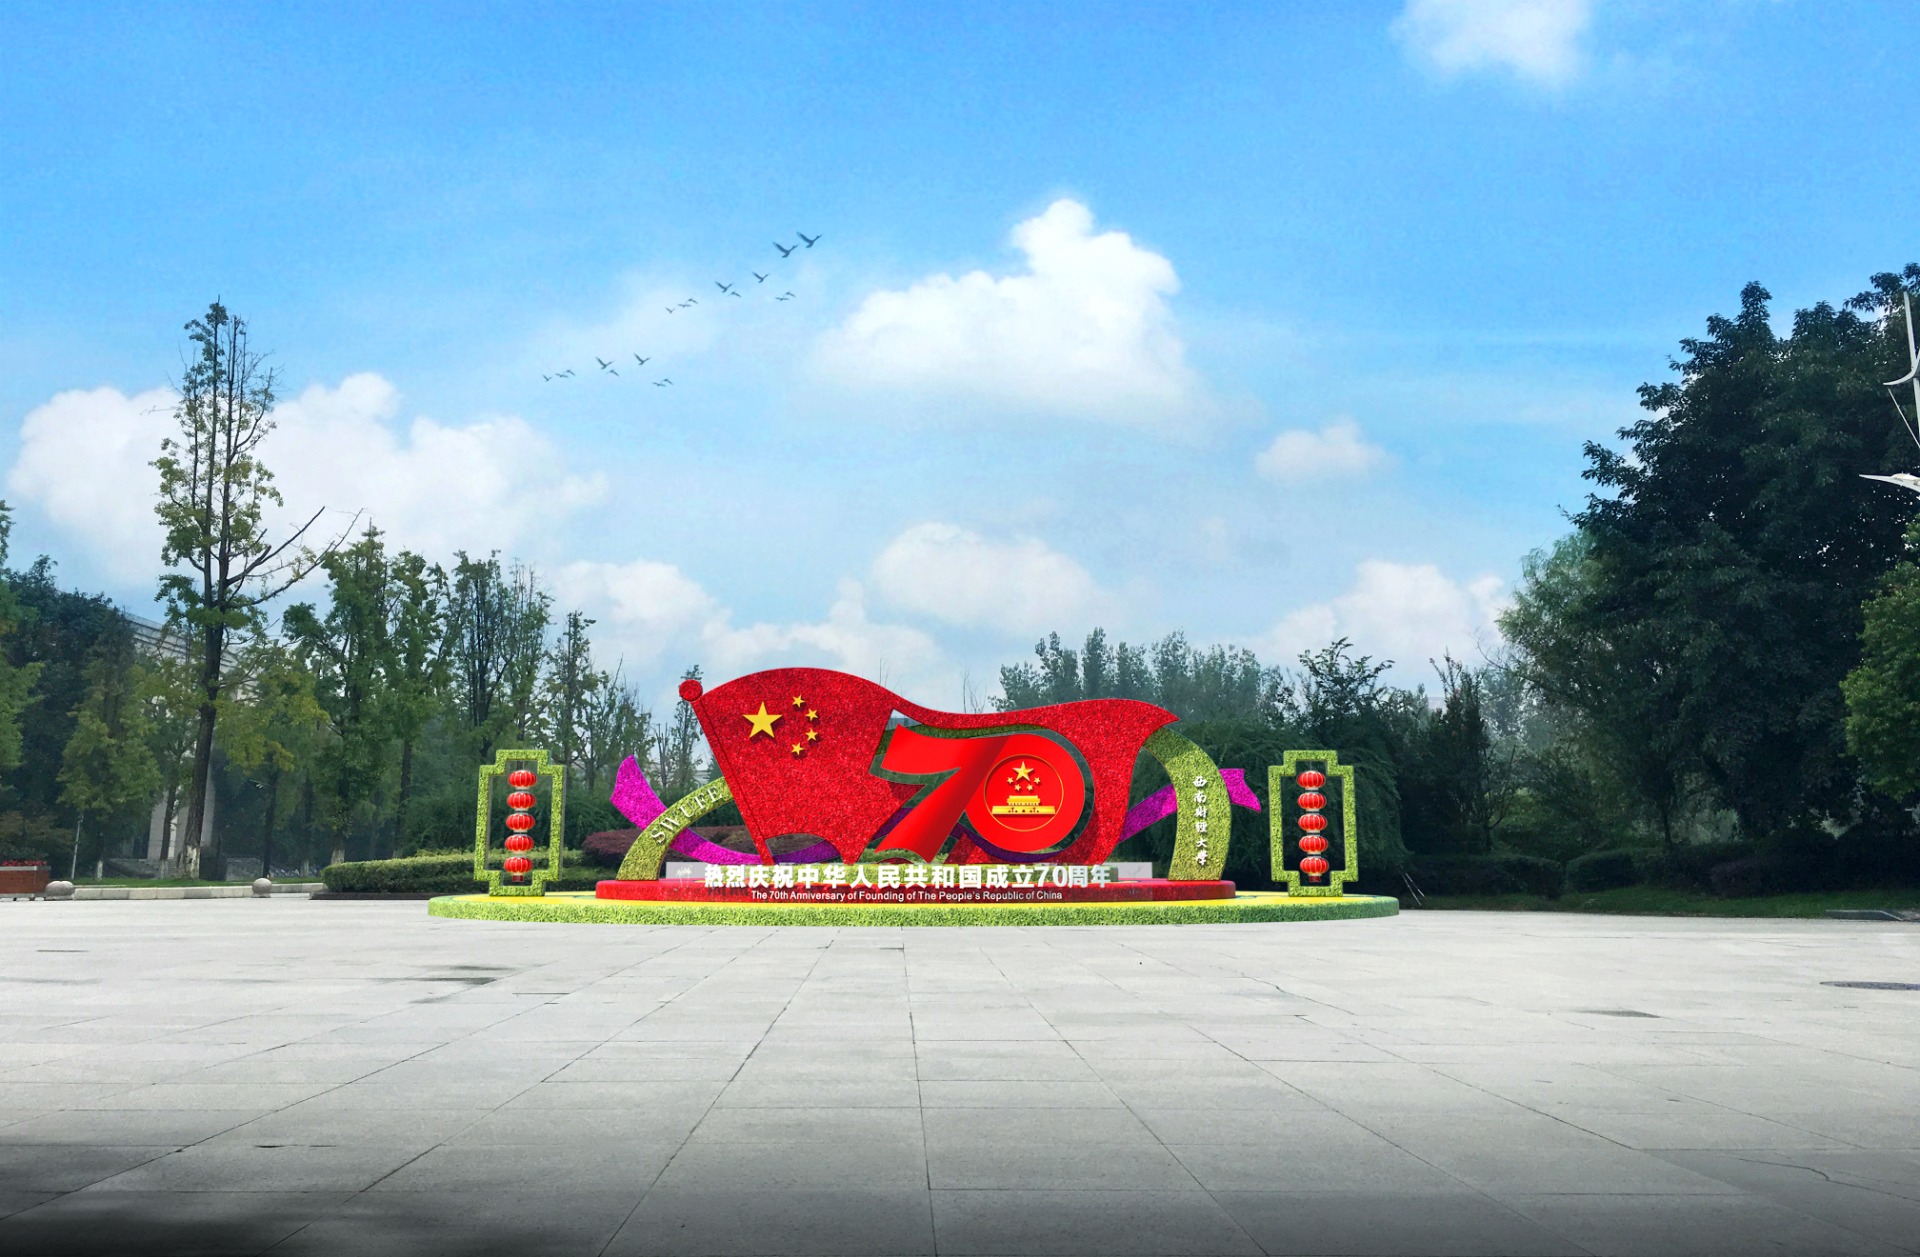 2019.9.10廣告裝飾-李中華13908087605，綠雕制作，成都，有3個地點及設計圖3(1)